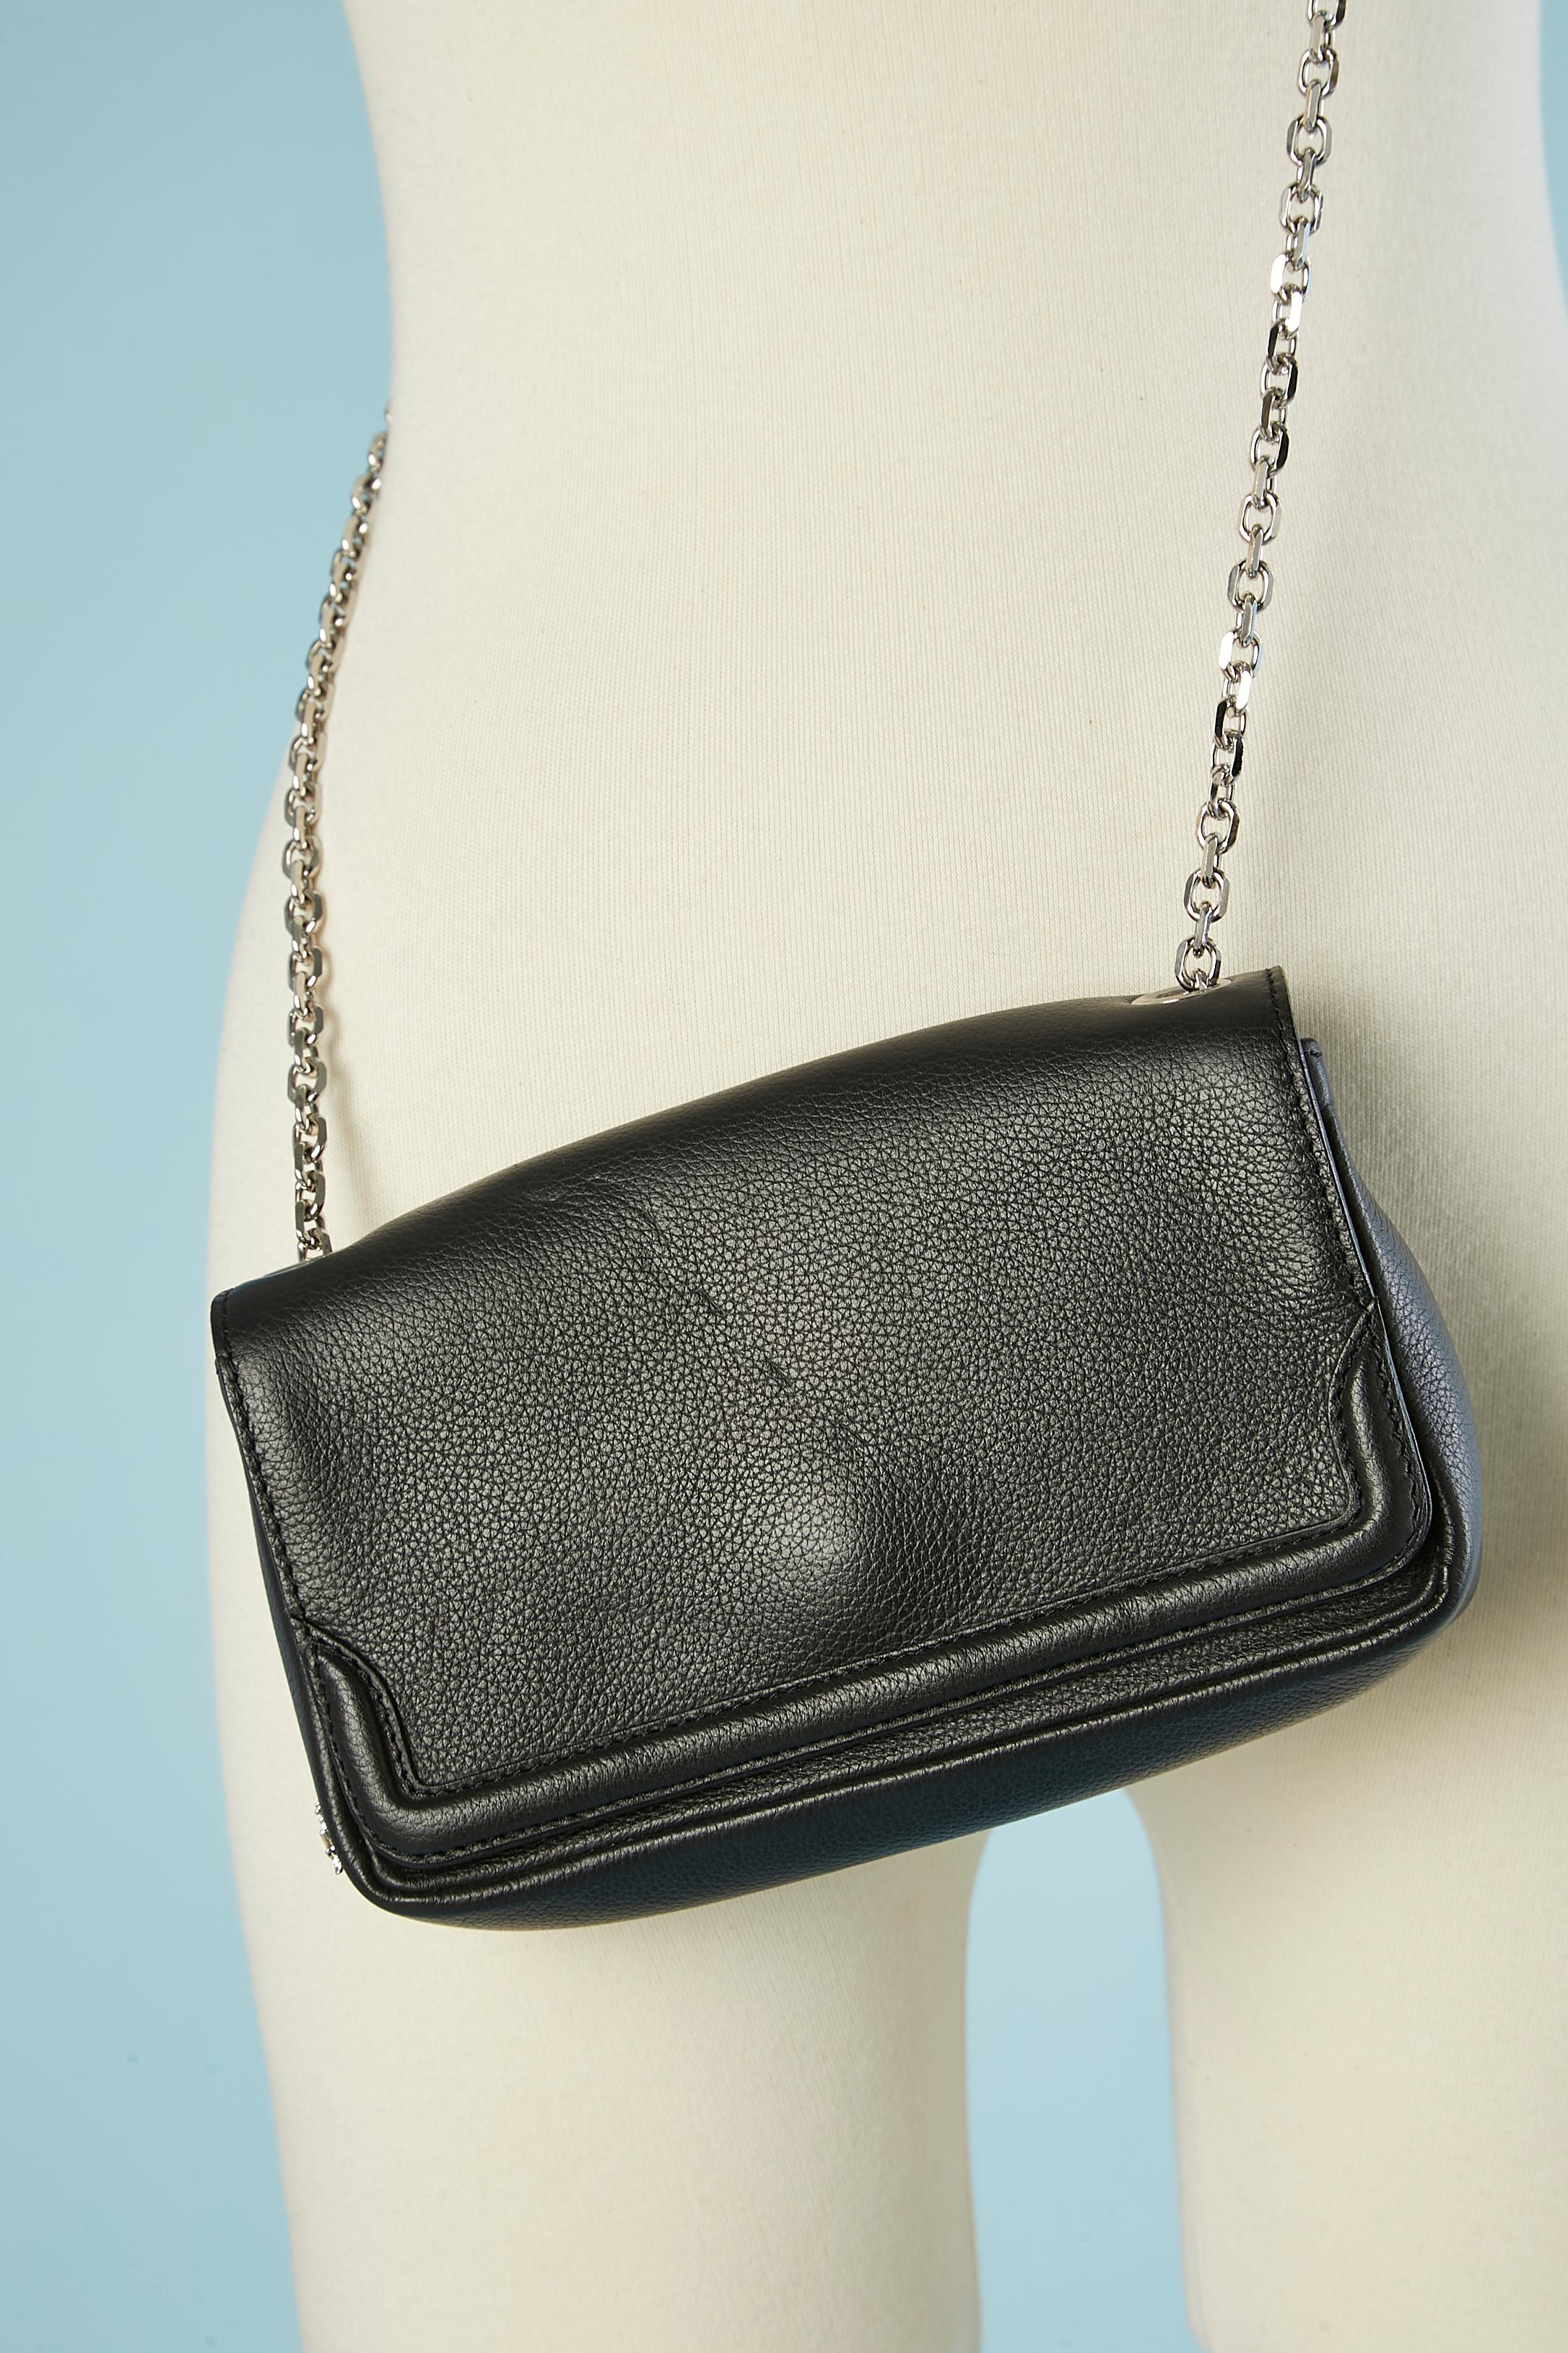 Artemis leather evening bag with Paris site-sight shoulder strap C. Louboutin  For Sale 2